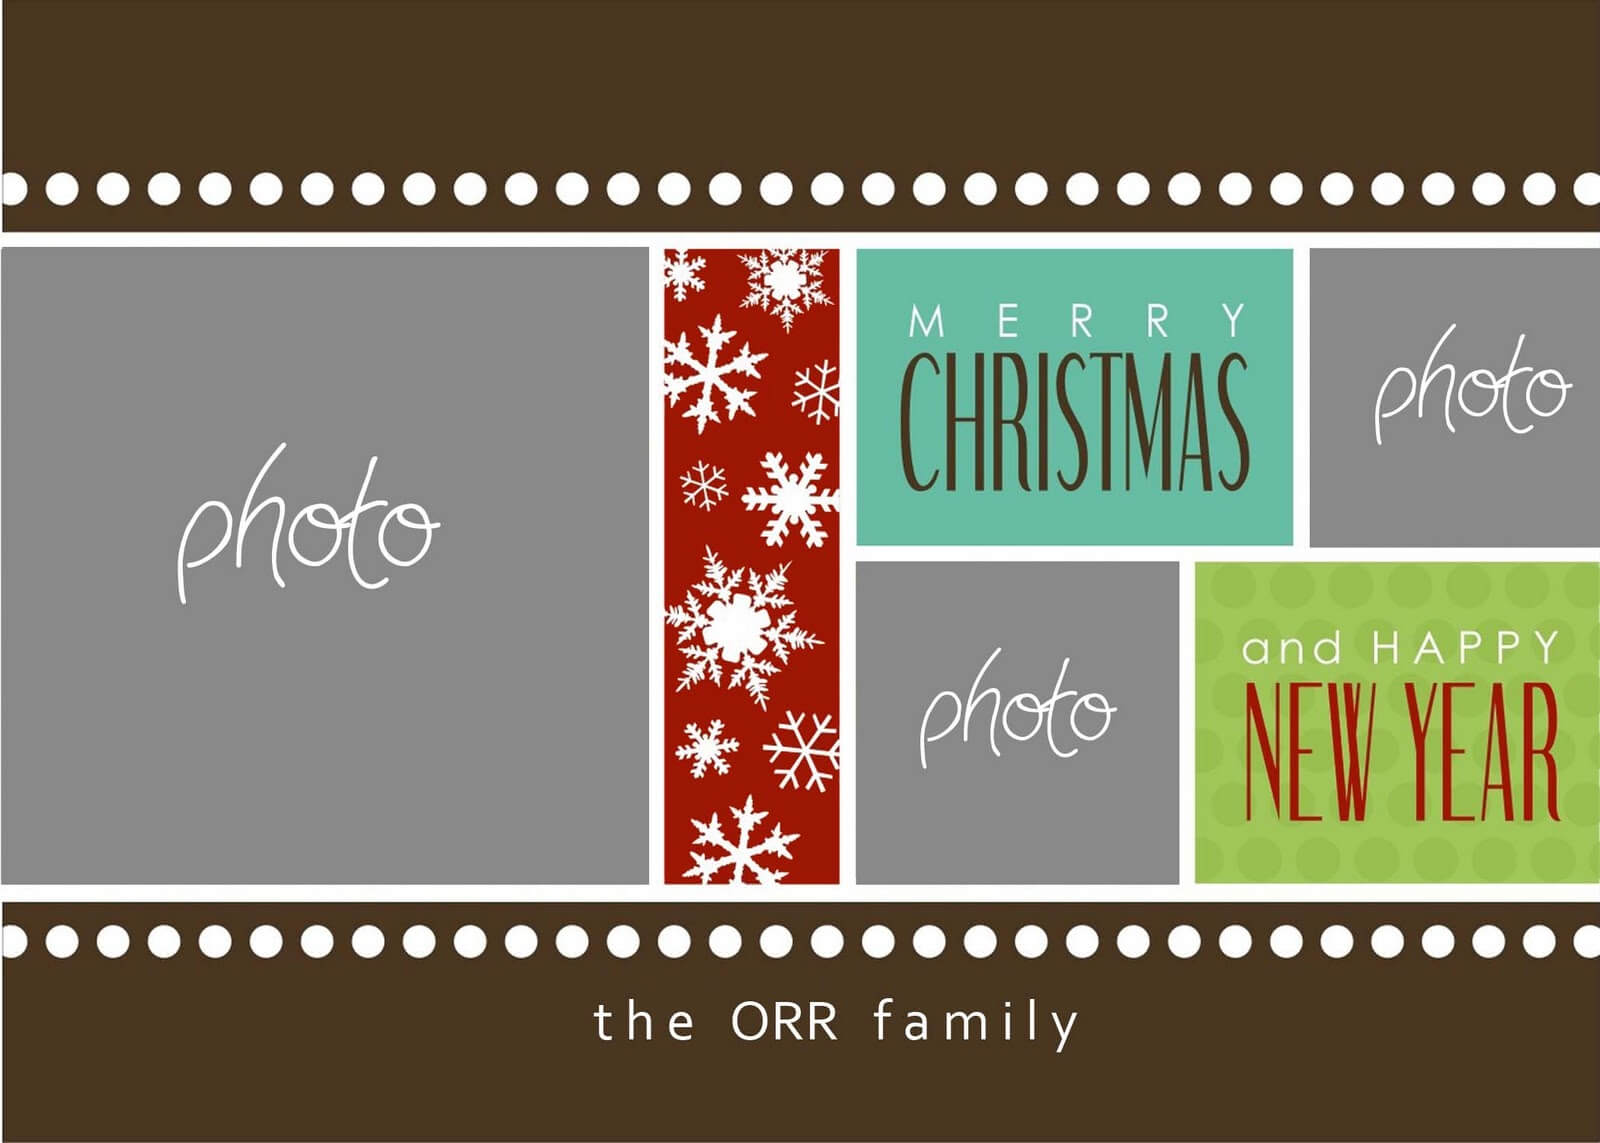 Christmas Cards Templates Photoshop ] – Christmas Card Throughout Christmas Photo Card Templates Photoshop